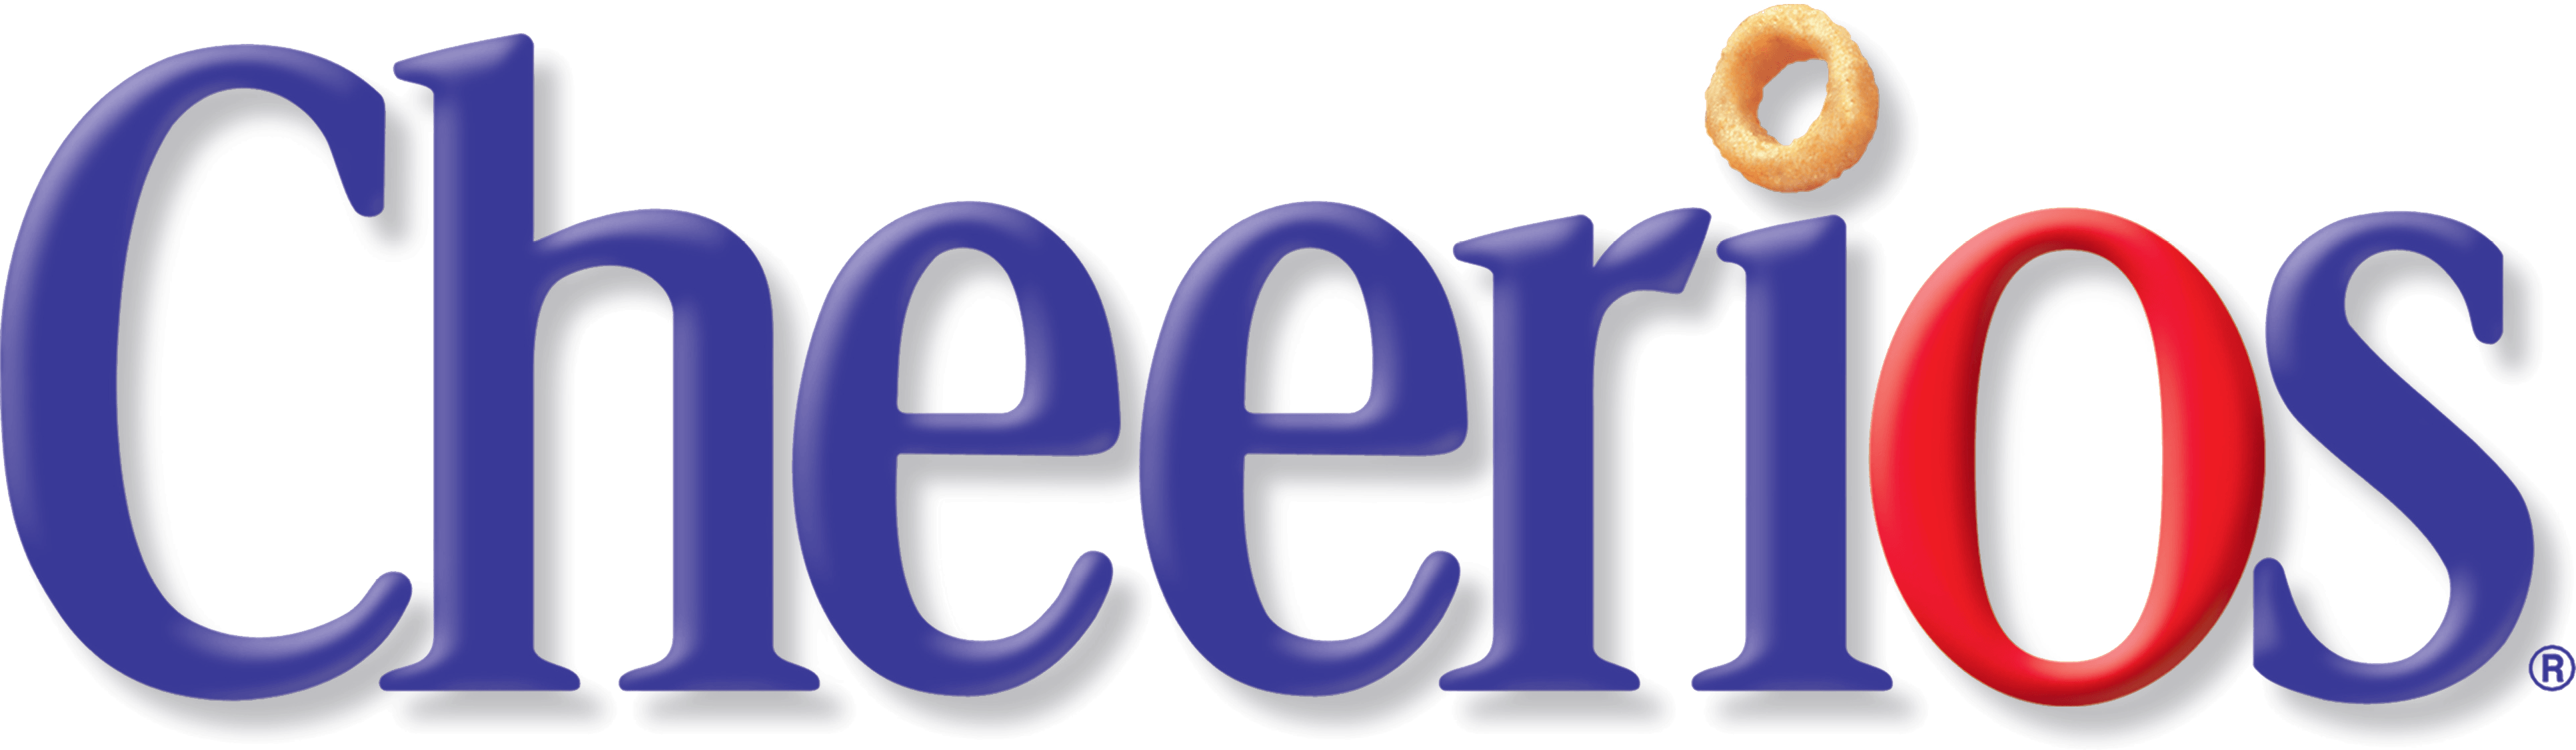 Cheerios Logo - Cheerios Logo. Logos Of Interest. Logos, Cereal, Logo Design